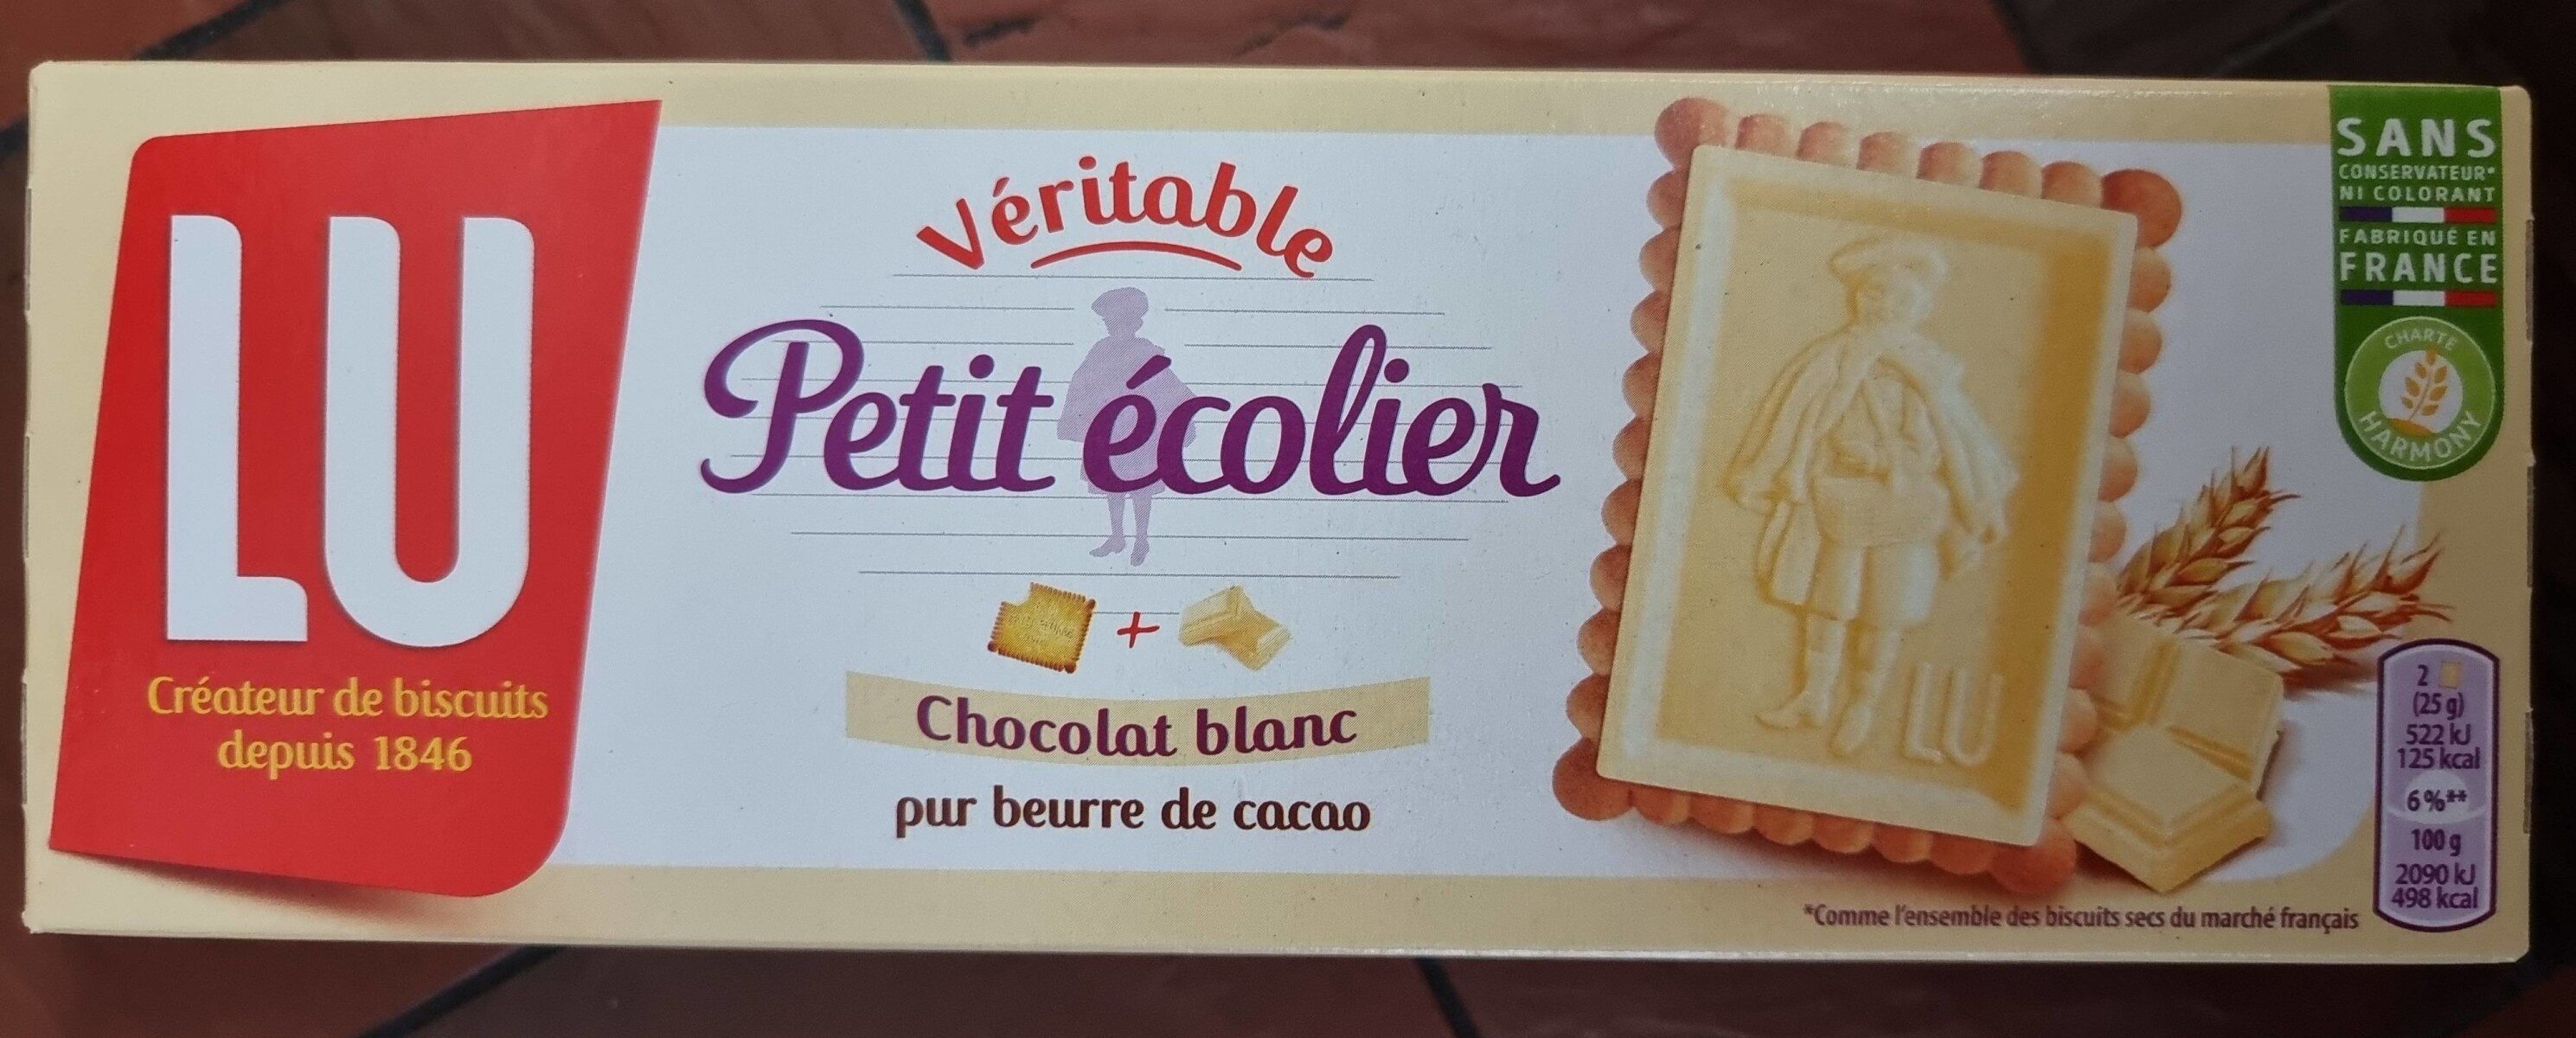 Véritable petit écolier Chocolat Blanc 150g - Produit